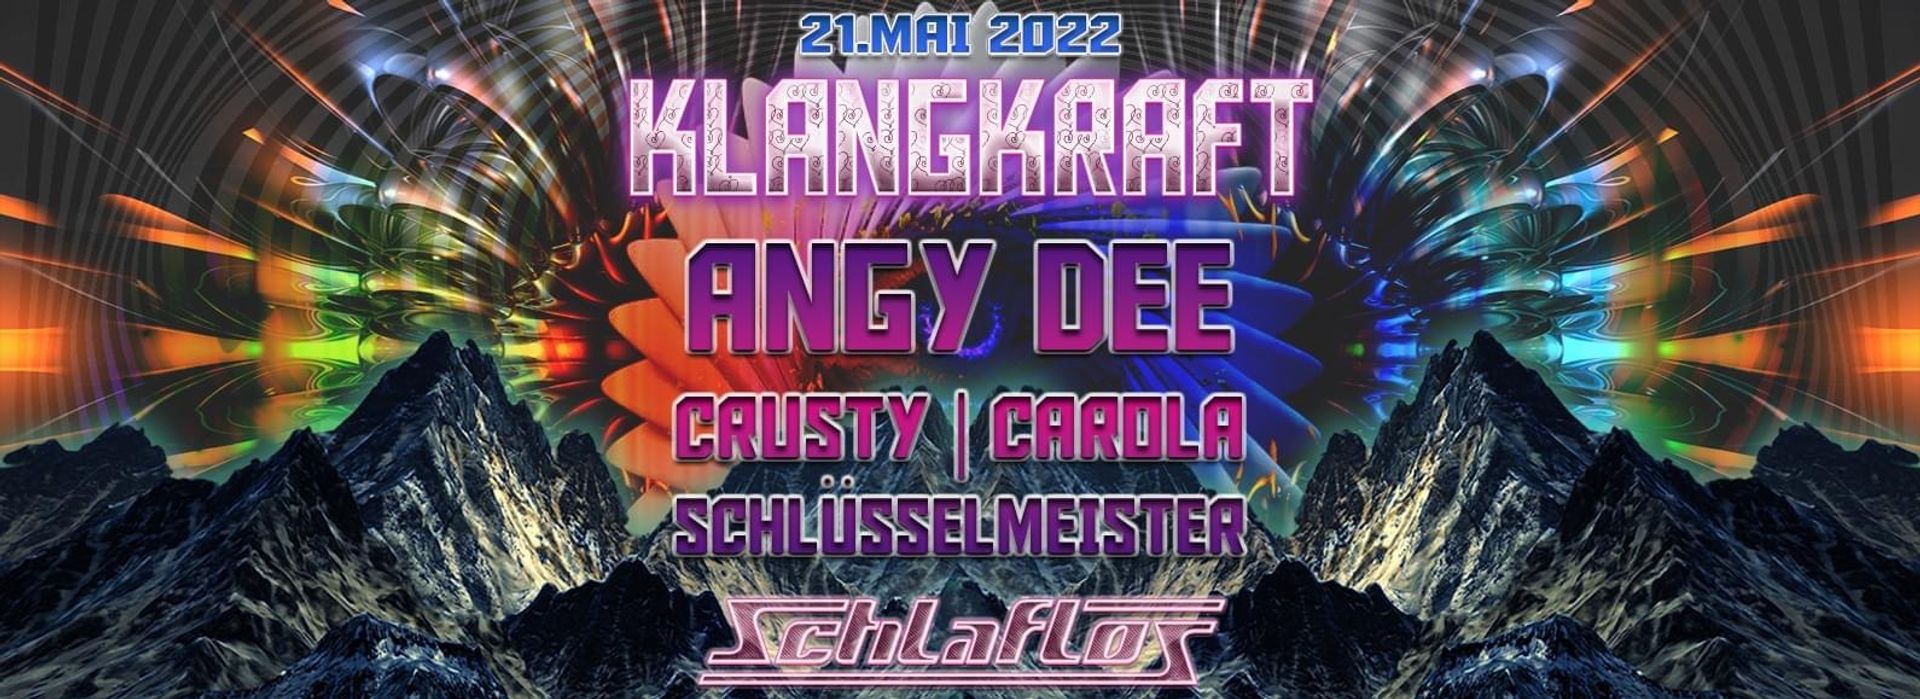 Flyer Klangkraft 2022-05-21 23:00:00